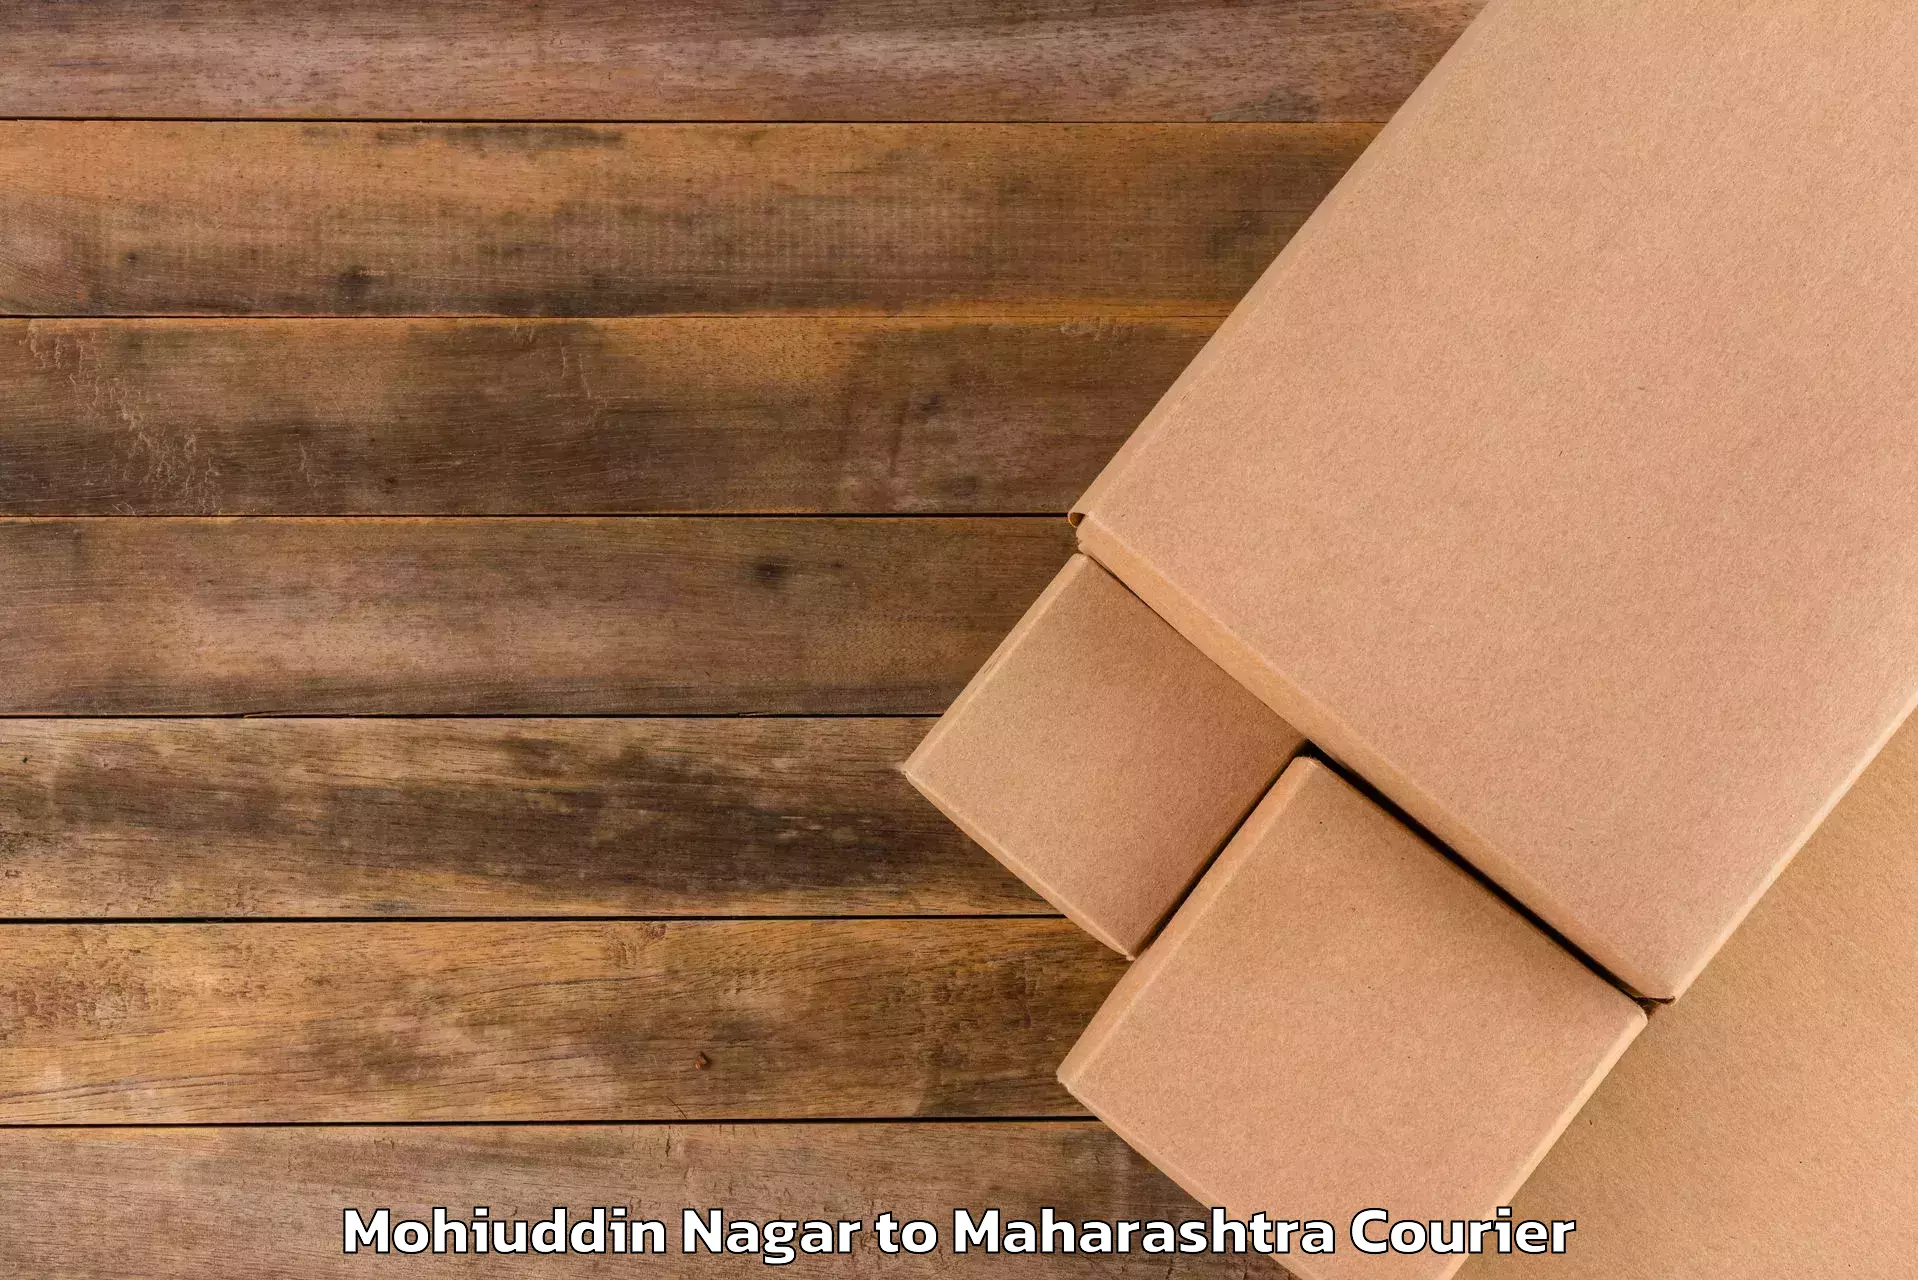 Personal effects shipping Mohiuddin Nagar to Ghatanji